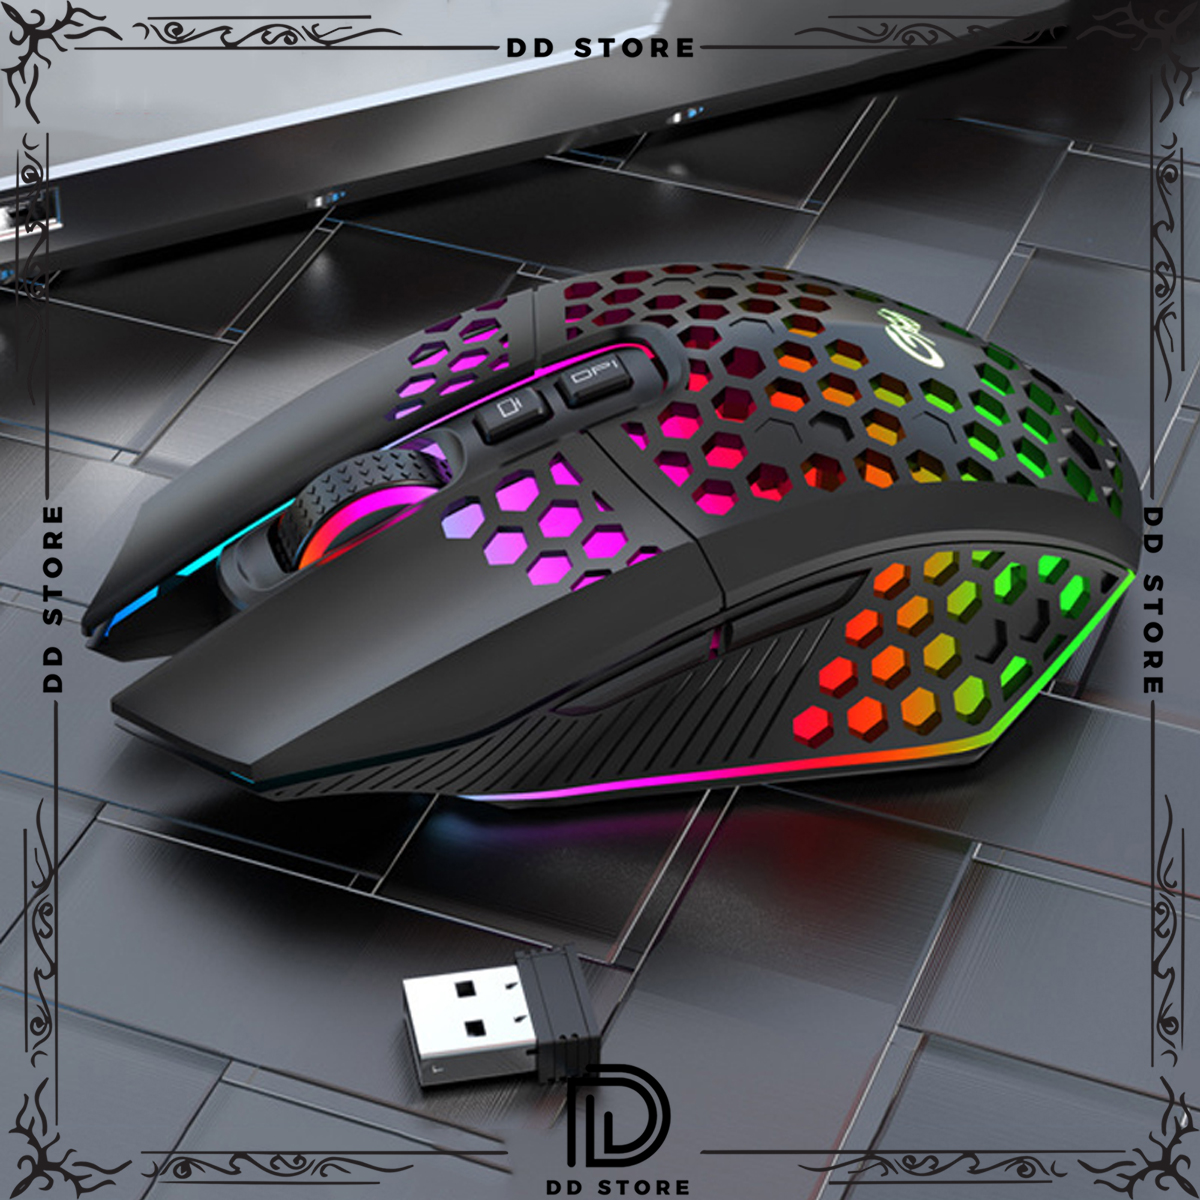 Chuột không dây chơi game KBM 113-X801 thiết kế độc lạ Led RGB đổi màu click chống ồn DPI 1600 - Hàng chính hãng